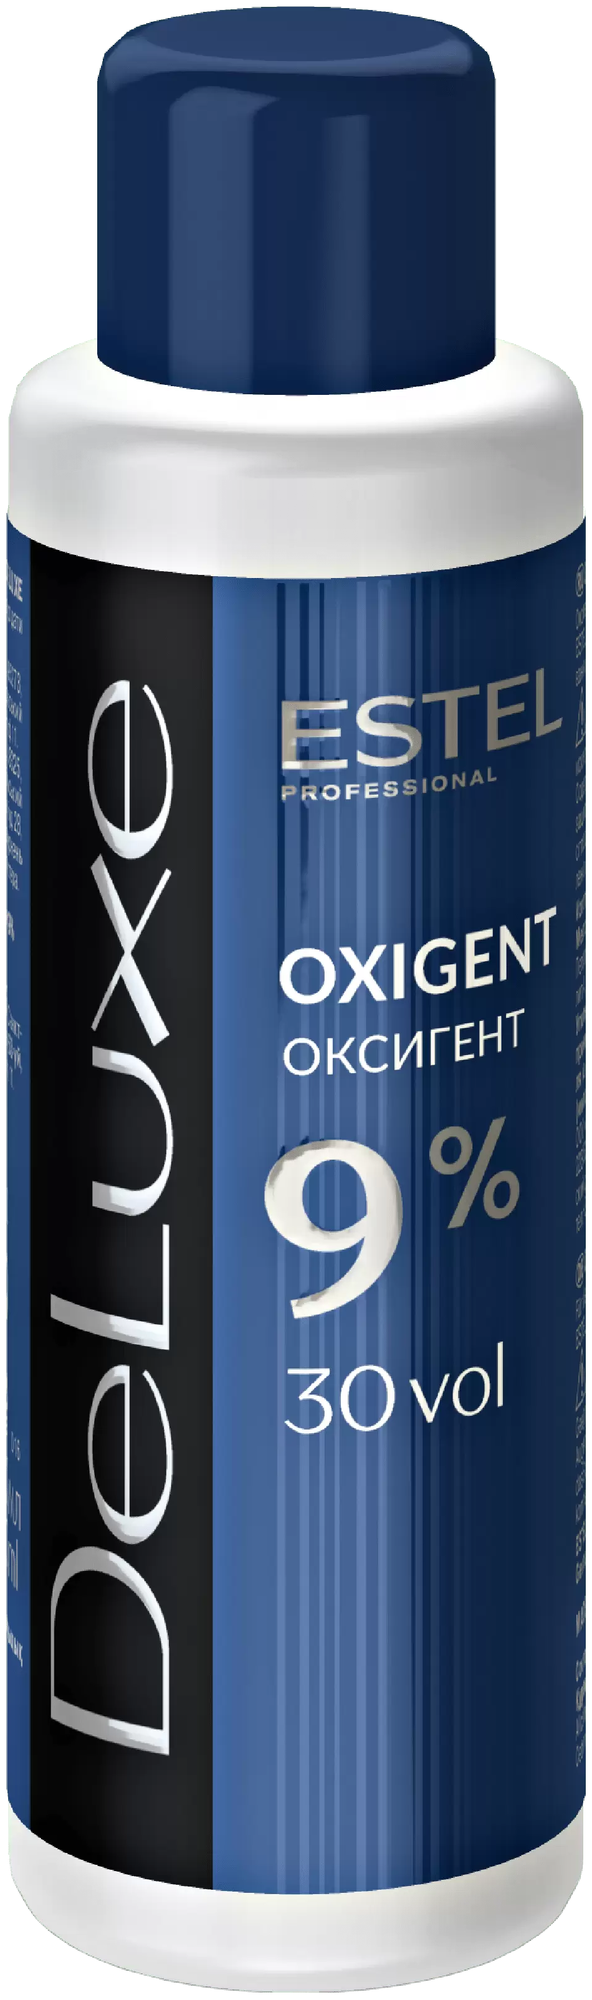 ESTEL Оксигент для волос 9% DE LUXE (60 мл)